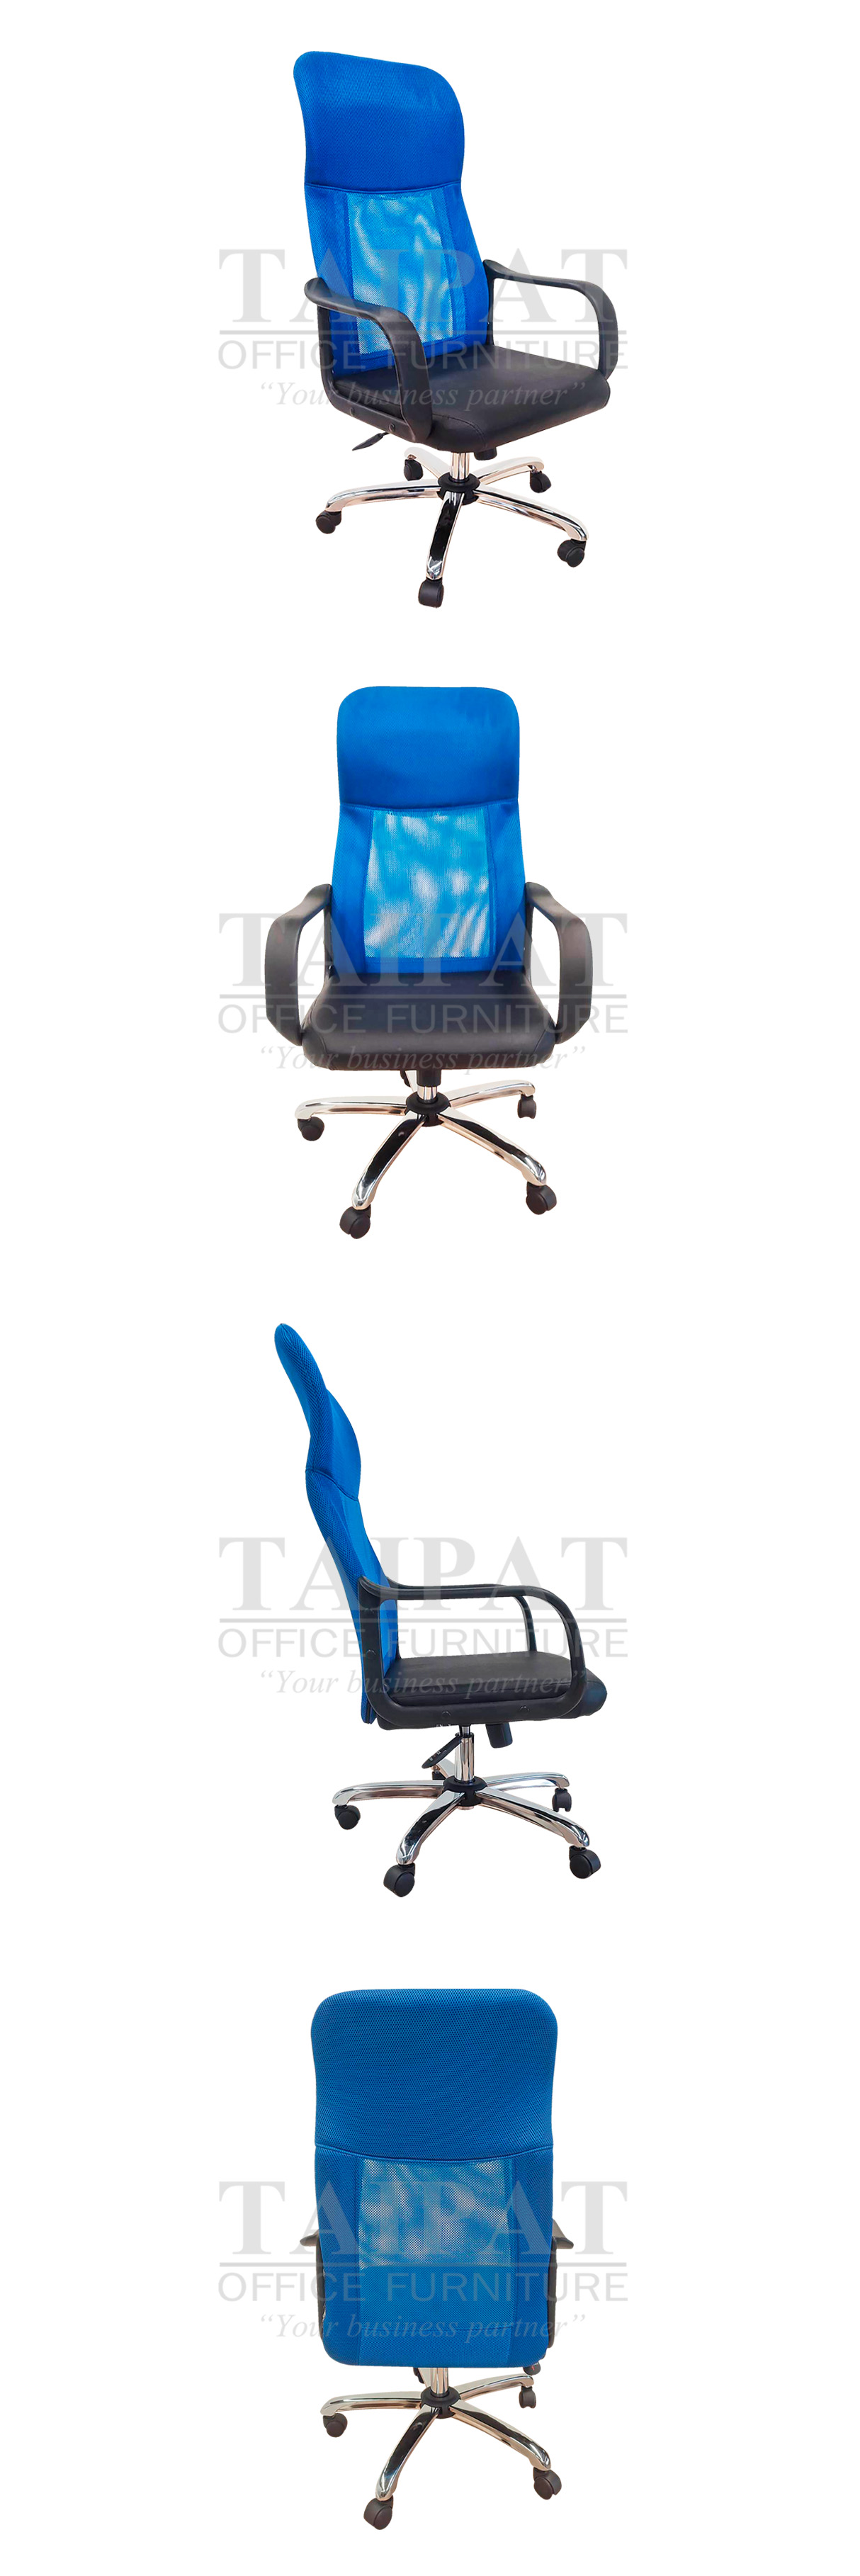 เก้าอี้ผู้บริหาร TKS-232